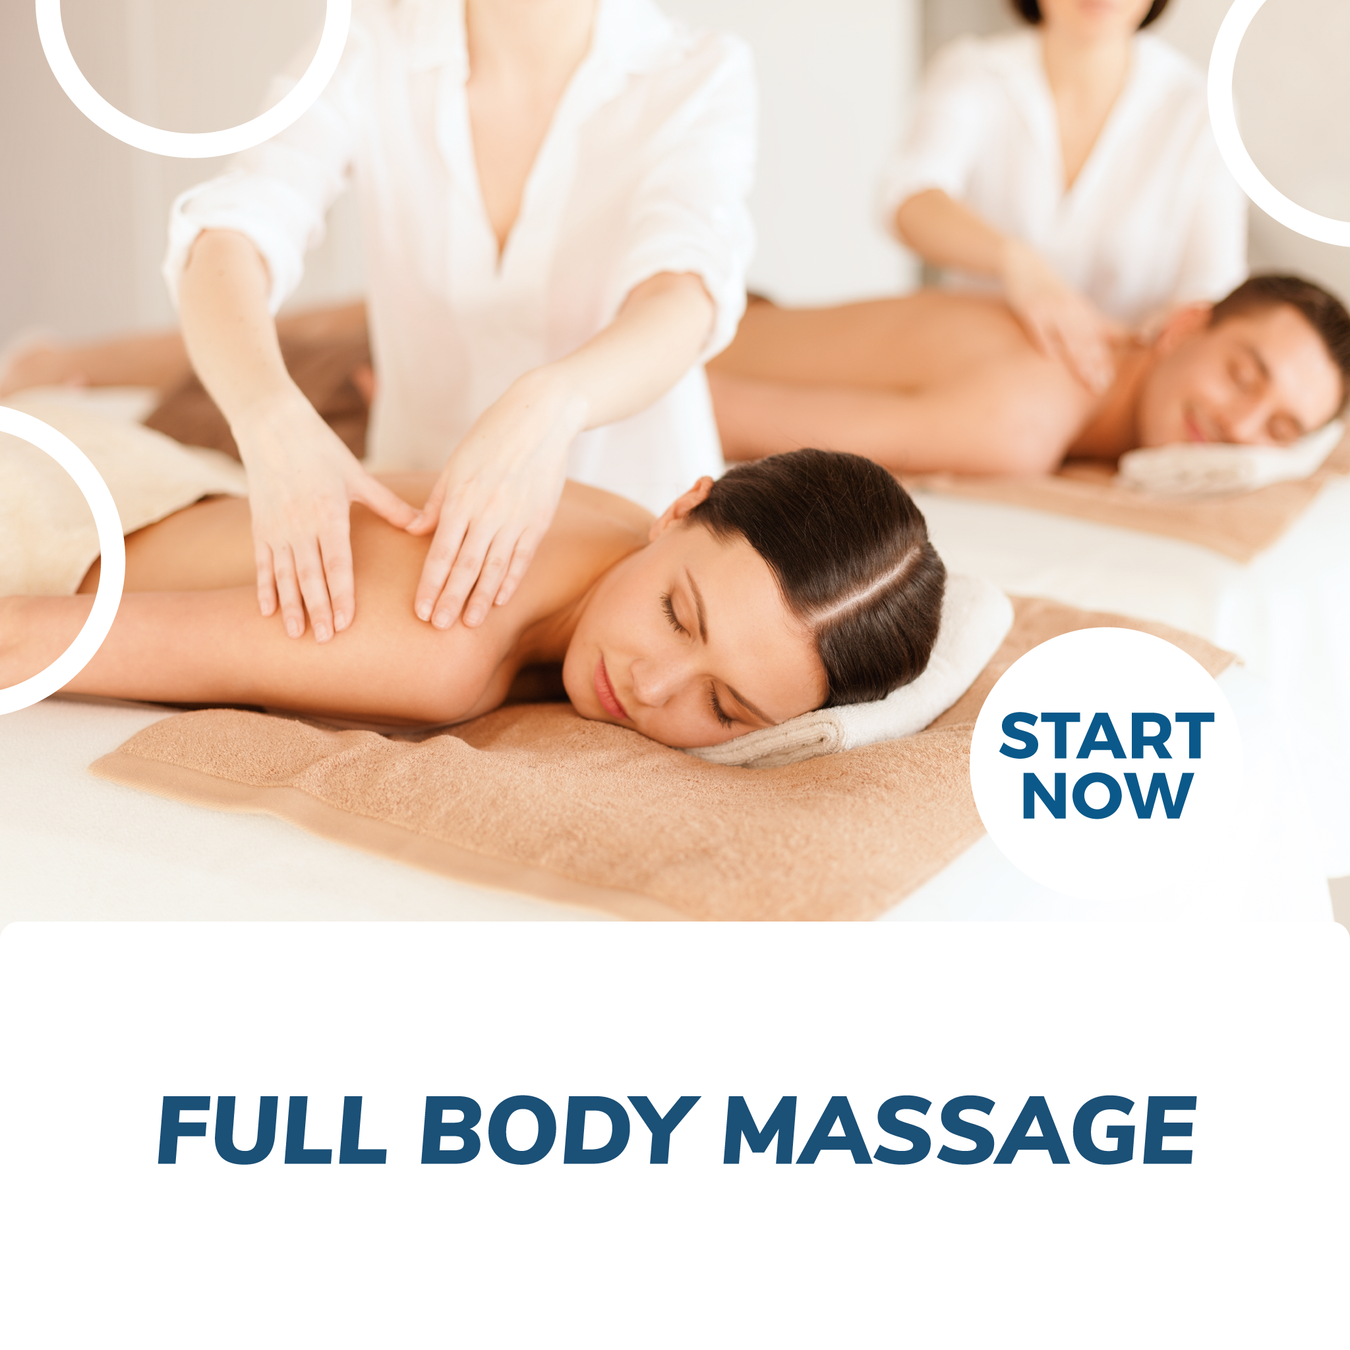 Massage Courses